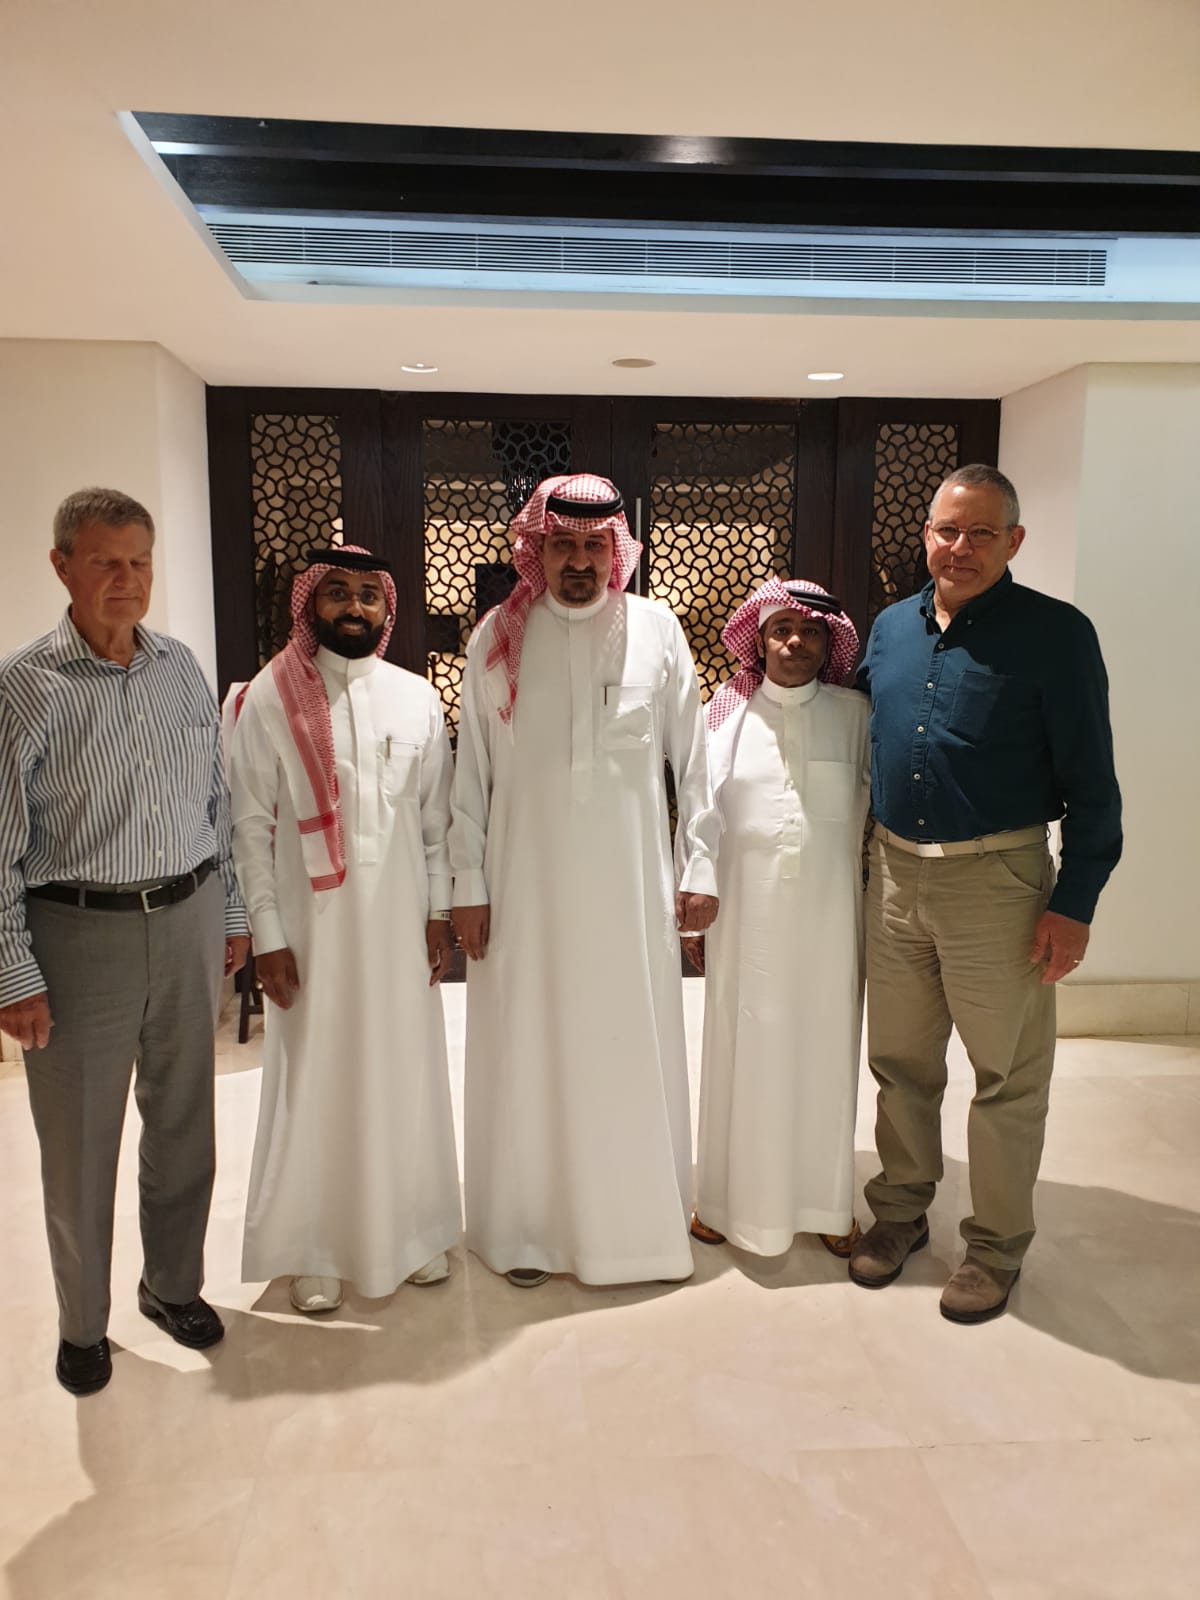 الأمير تركي محمد العبدالله الفيصل يجتمع بخبراء ومهندسين أجانب